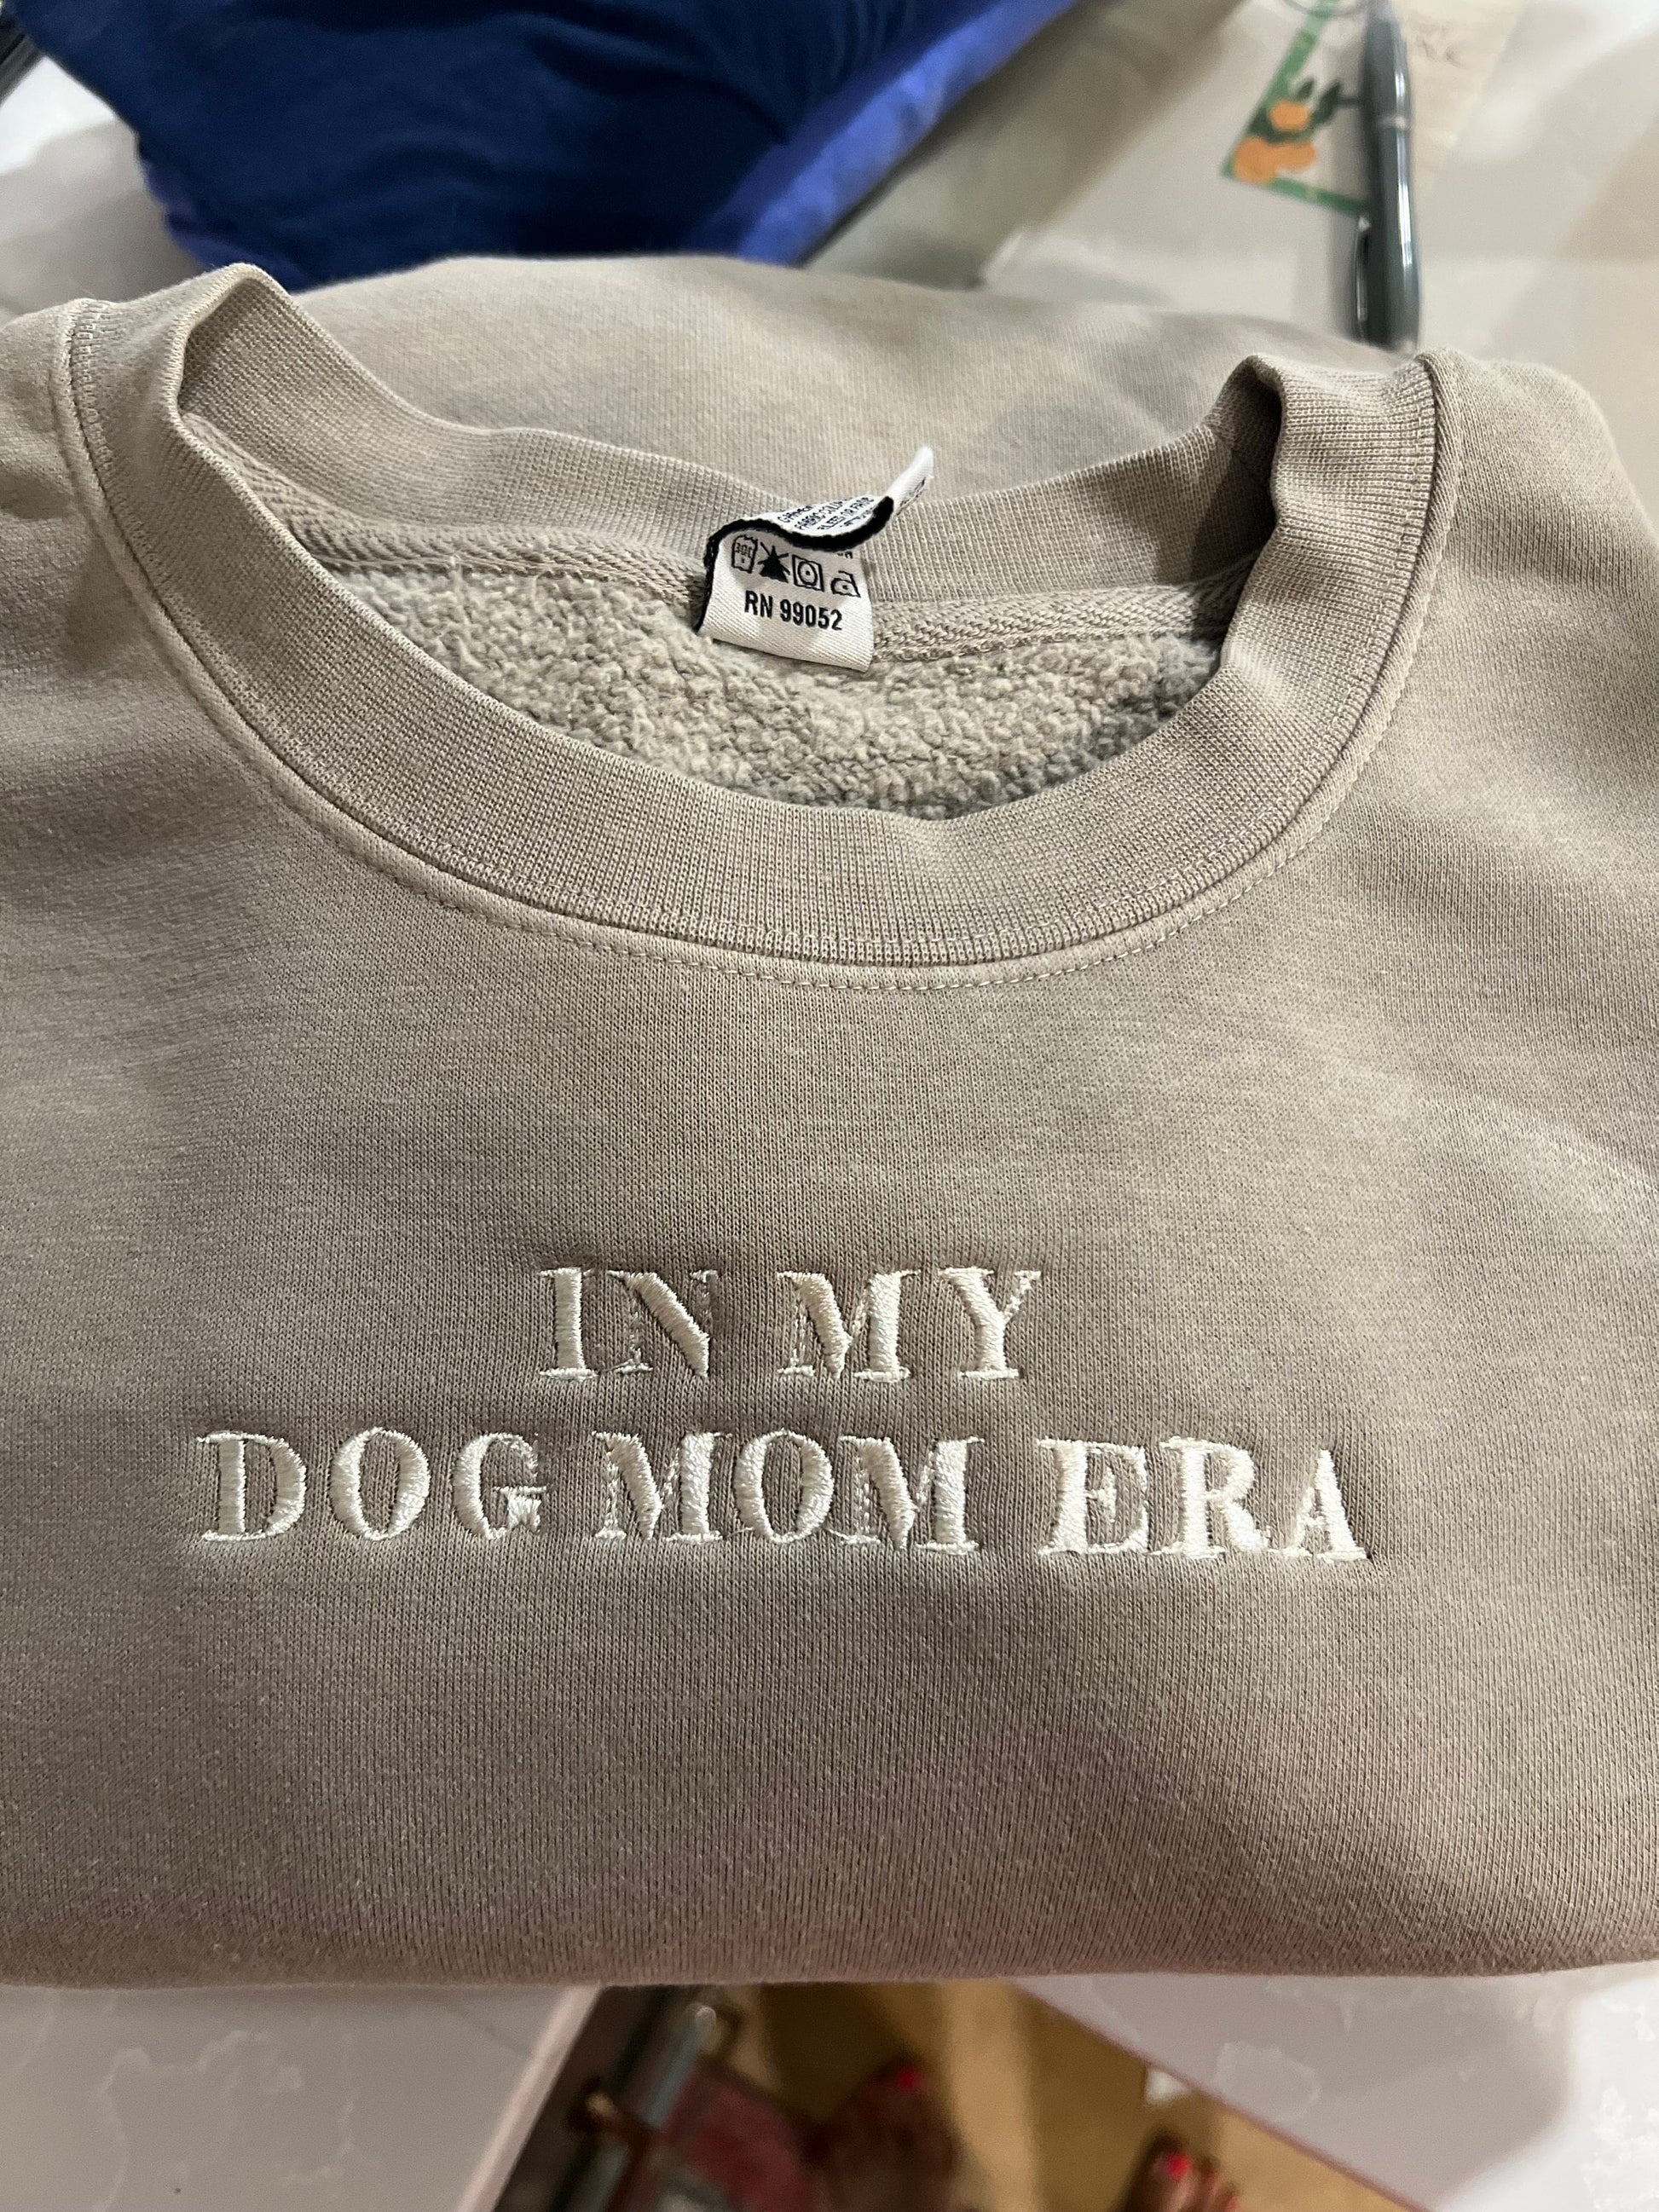 In My Era Premium Sweatshirt Dog Mom Era Teacher Era Bride Era Nursing School Era